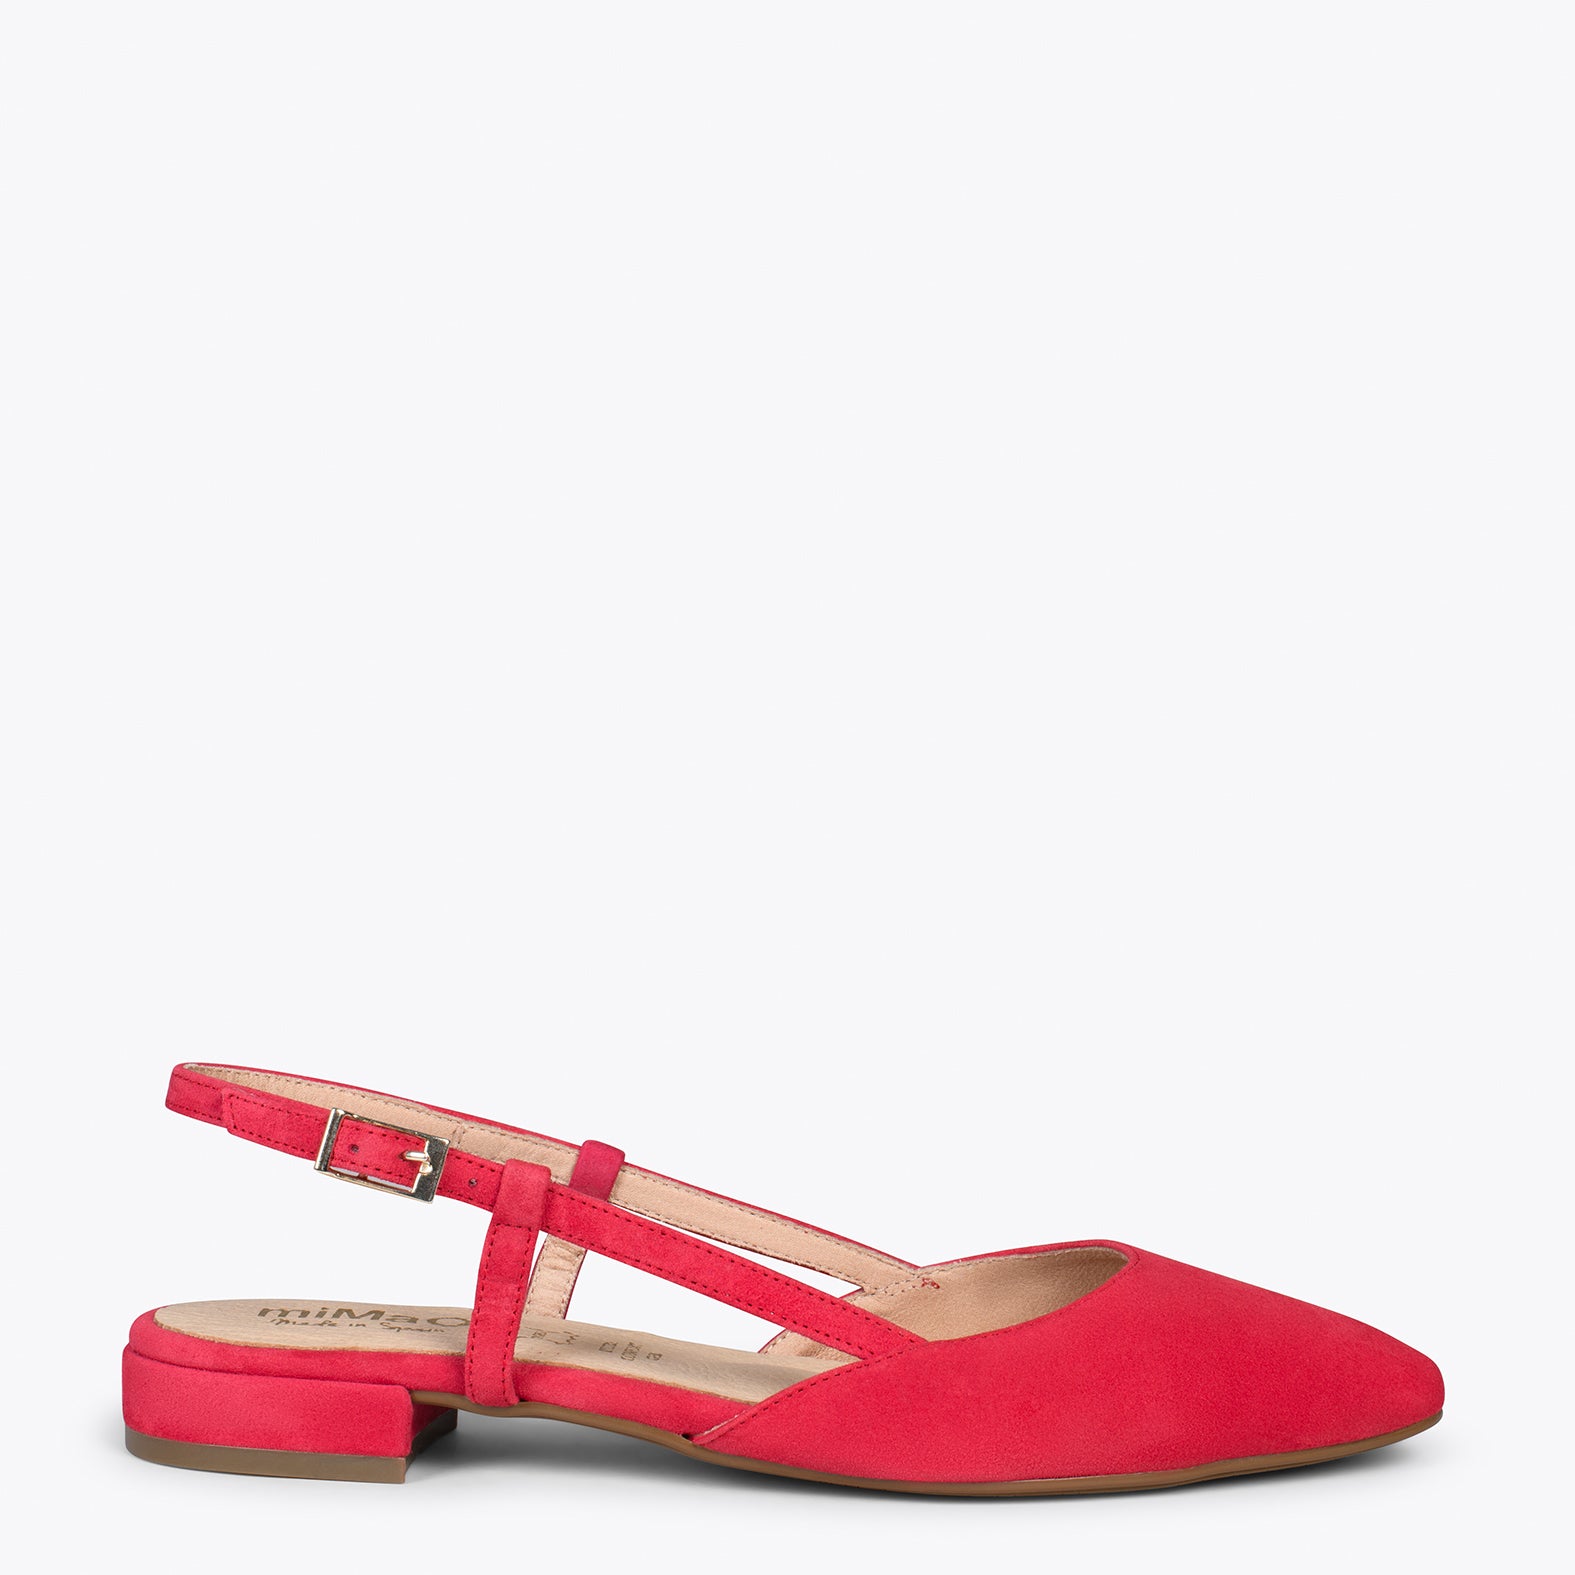 BRUNCH - RED sling-back flat shoe